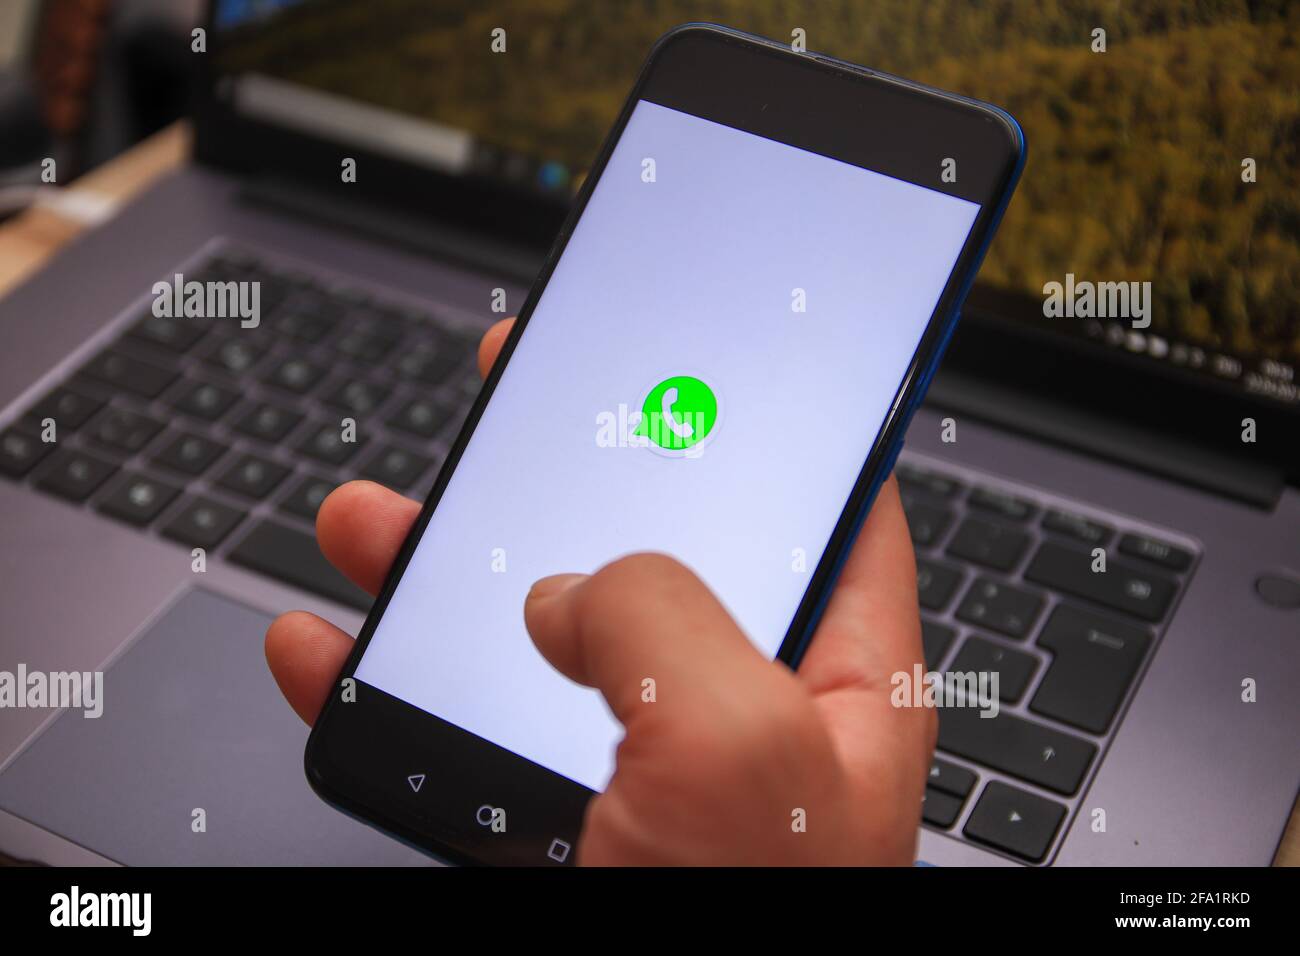 Berlino, Germania - 22 aprile 2021: Logo WhatsApp visualizzato sullo smartphone. Con WhatsApp, potrai inviare messaggi e chiamare gratuitamente in modo rapido, semplice e sicuro Foto Stock